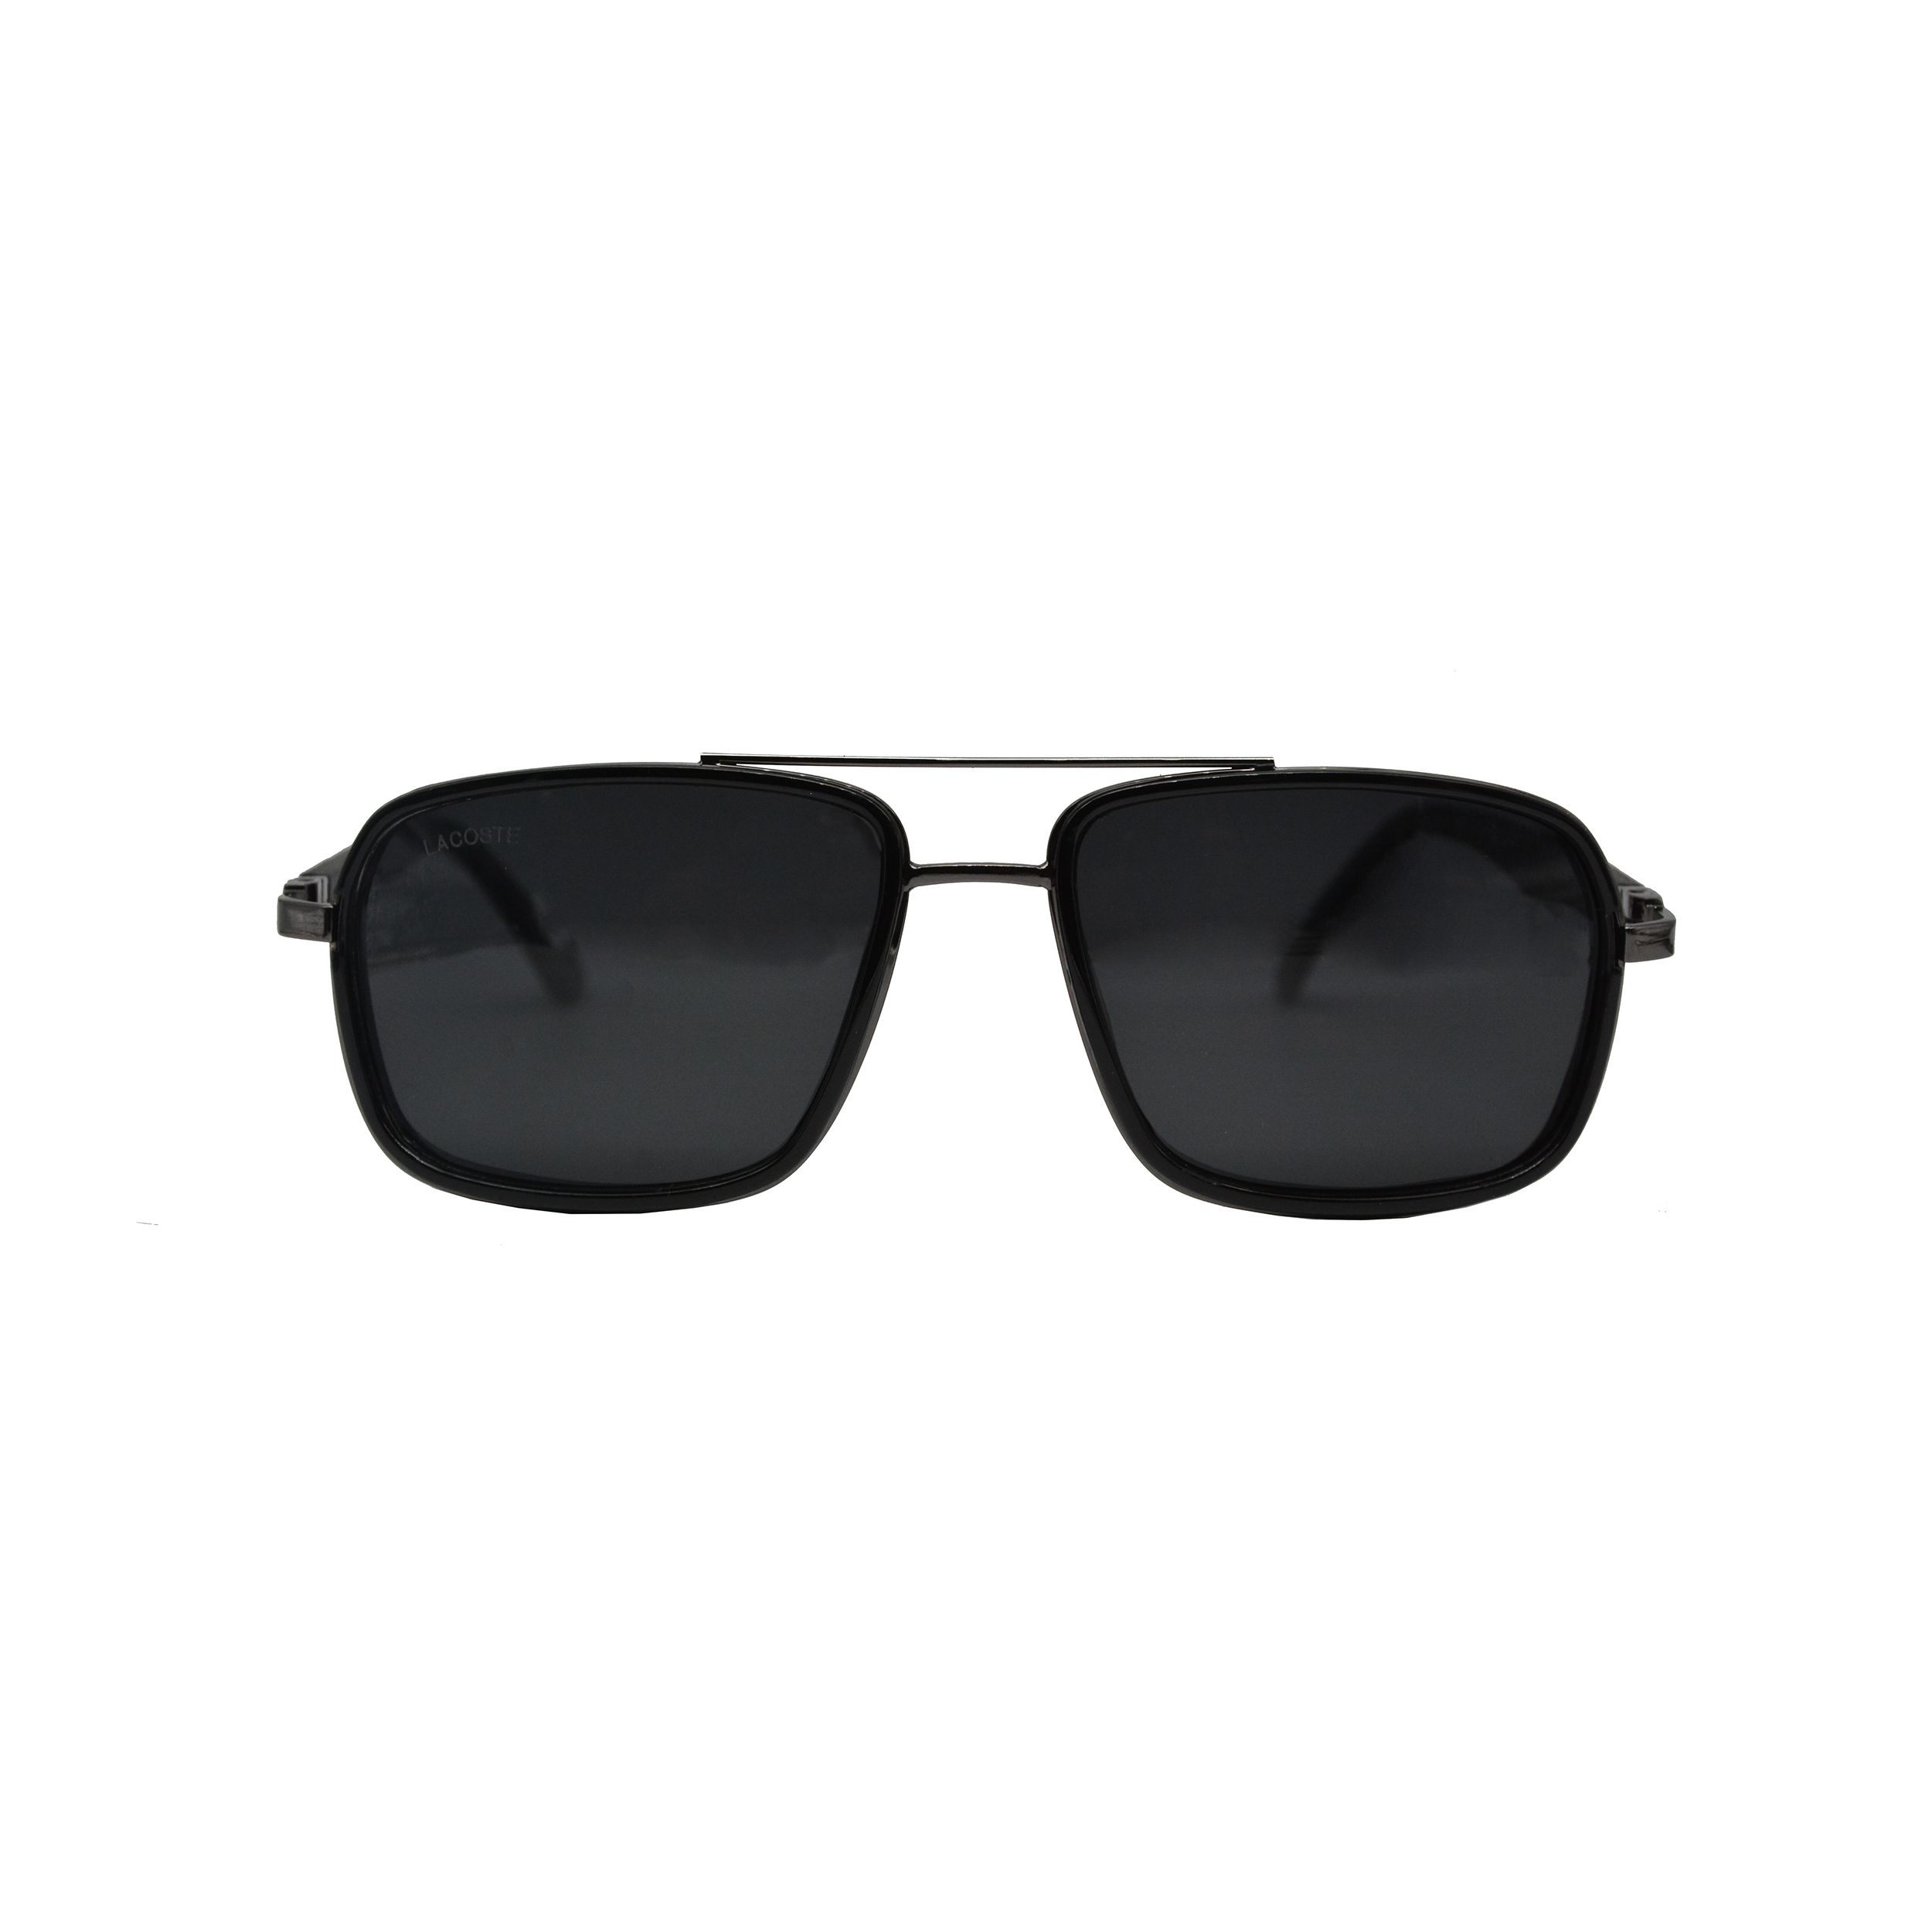 نکته خرید - قیمت روز عینک آفتابی لاگوست مدل L 162 54 14 145 POLARIZED BL خرید